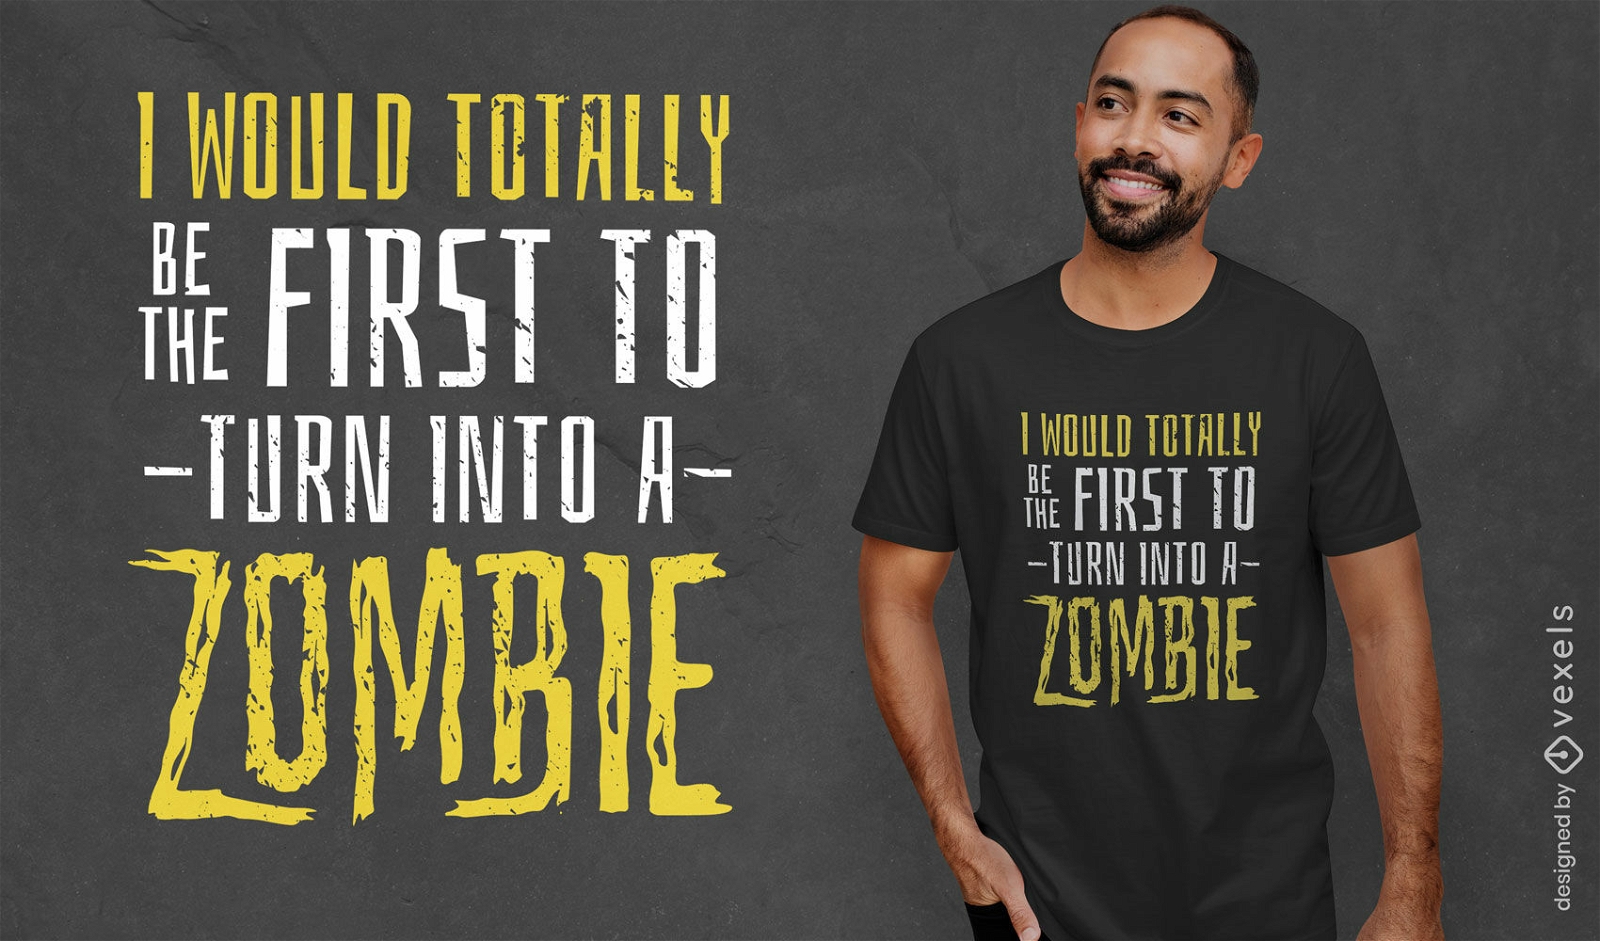 Zombie apocalypse funny quote t-shirt design